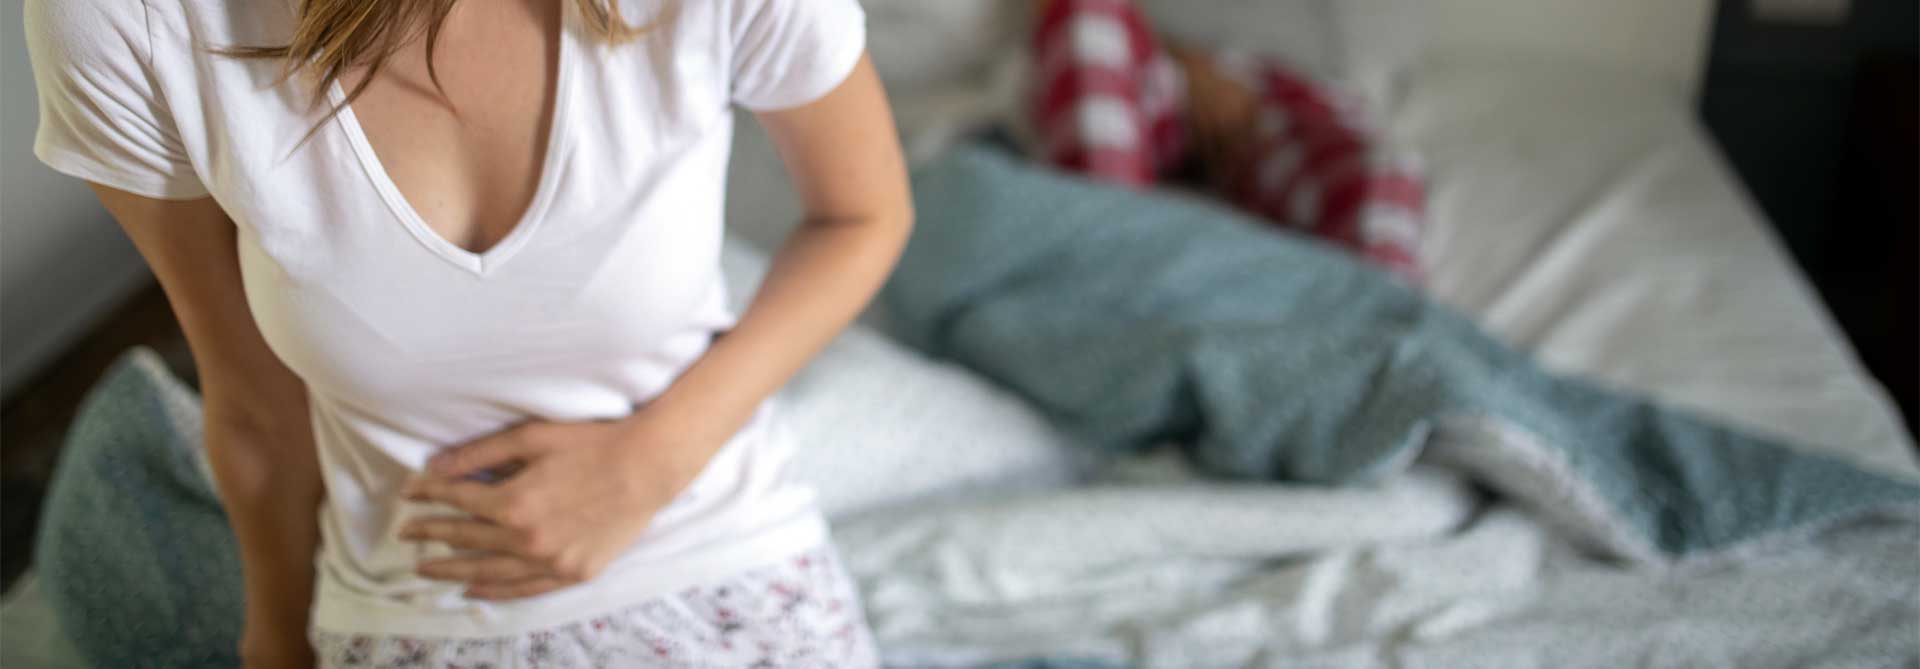 Savoir si on est enceinte sans test de grossesse